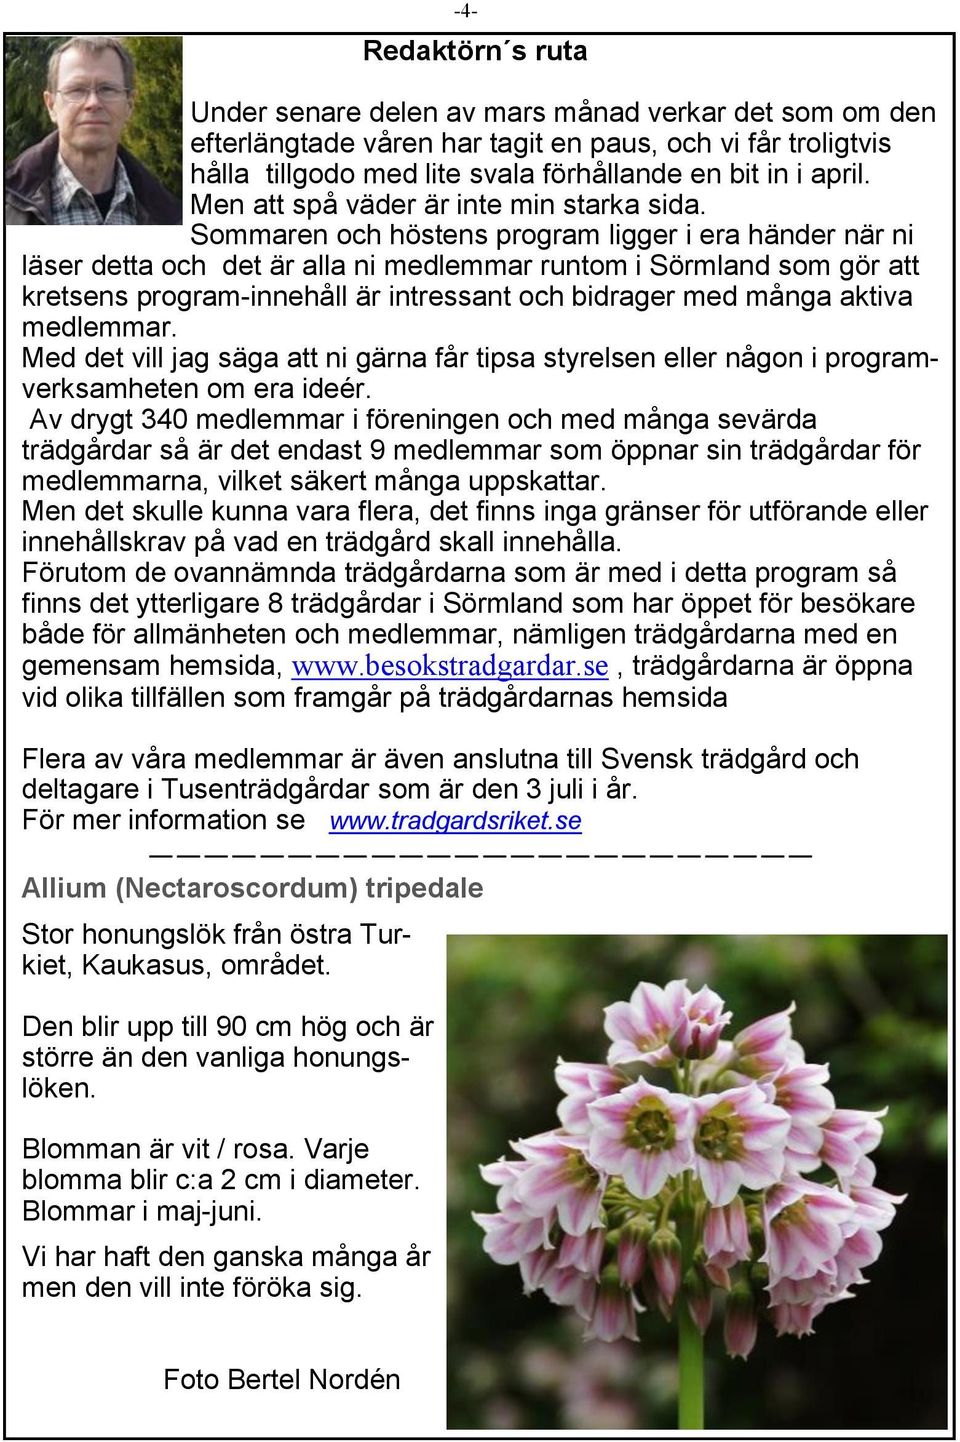 Sommaren och höstens program ligger i era händer när ni läser detta och det är alla ni medlemmar runtom i Sörmland som gör att kretsens program-innehåll är intressant och bidrager med många aktiva